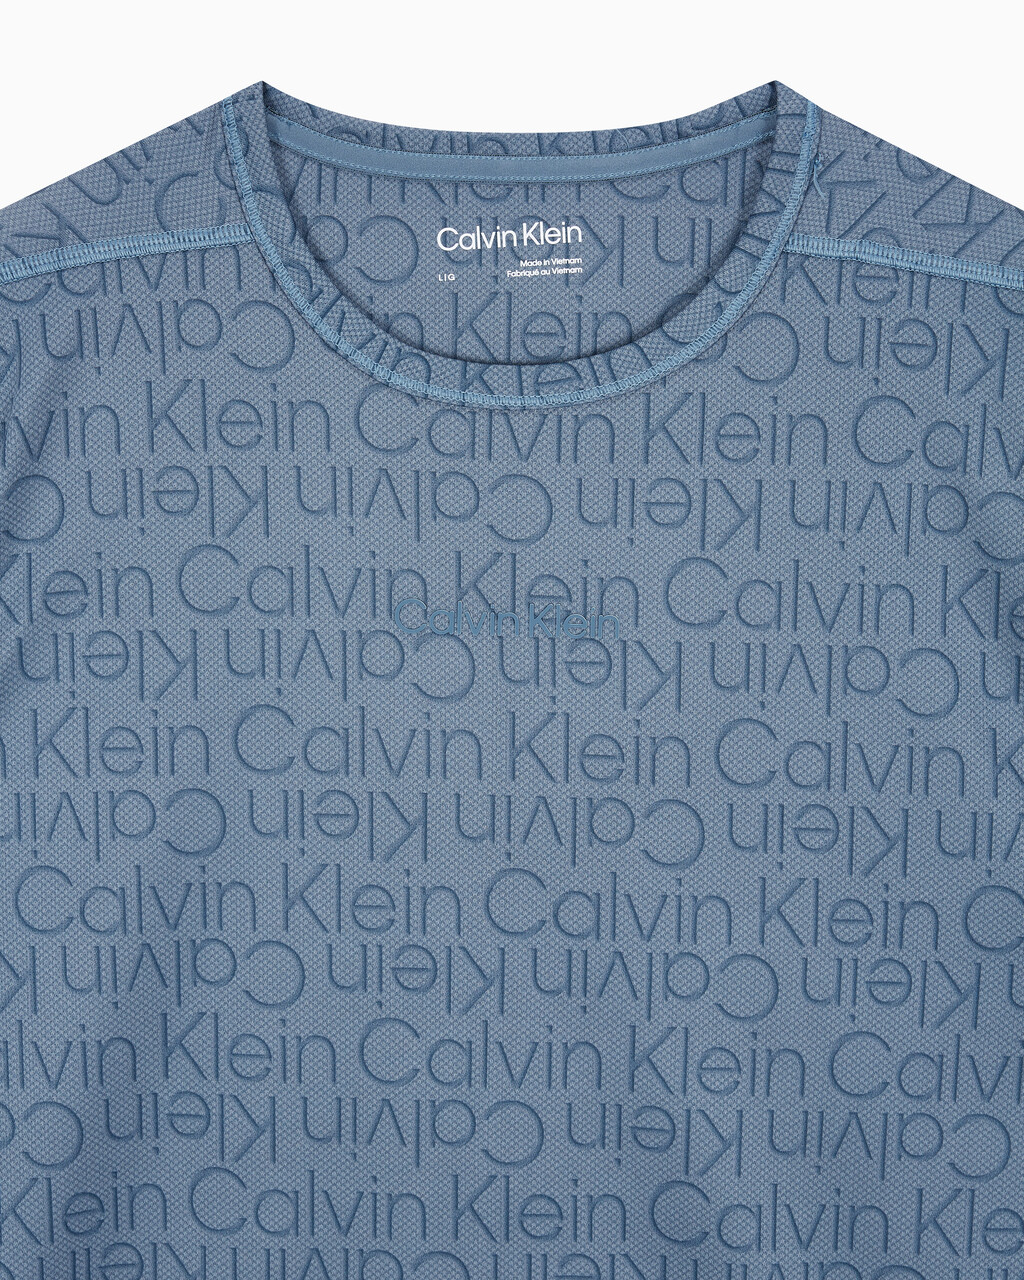 Buy 남성 레귤러 핏 숏슬리브 올오버프린트 티셔츠 in color BLUE